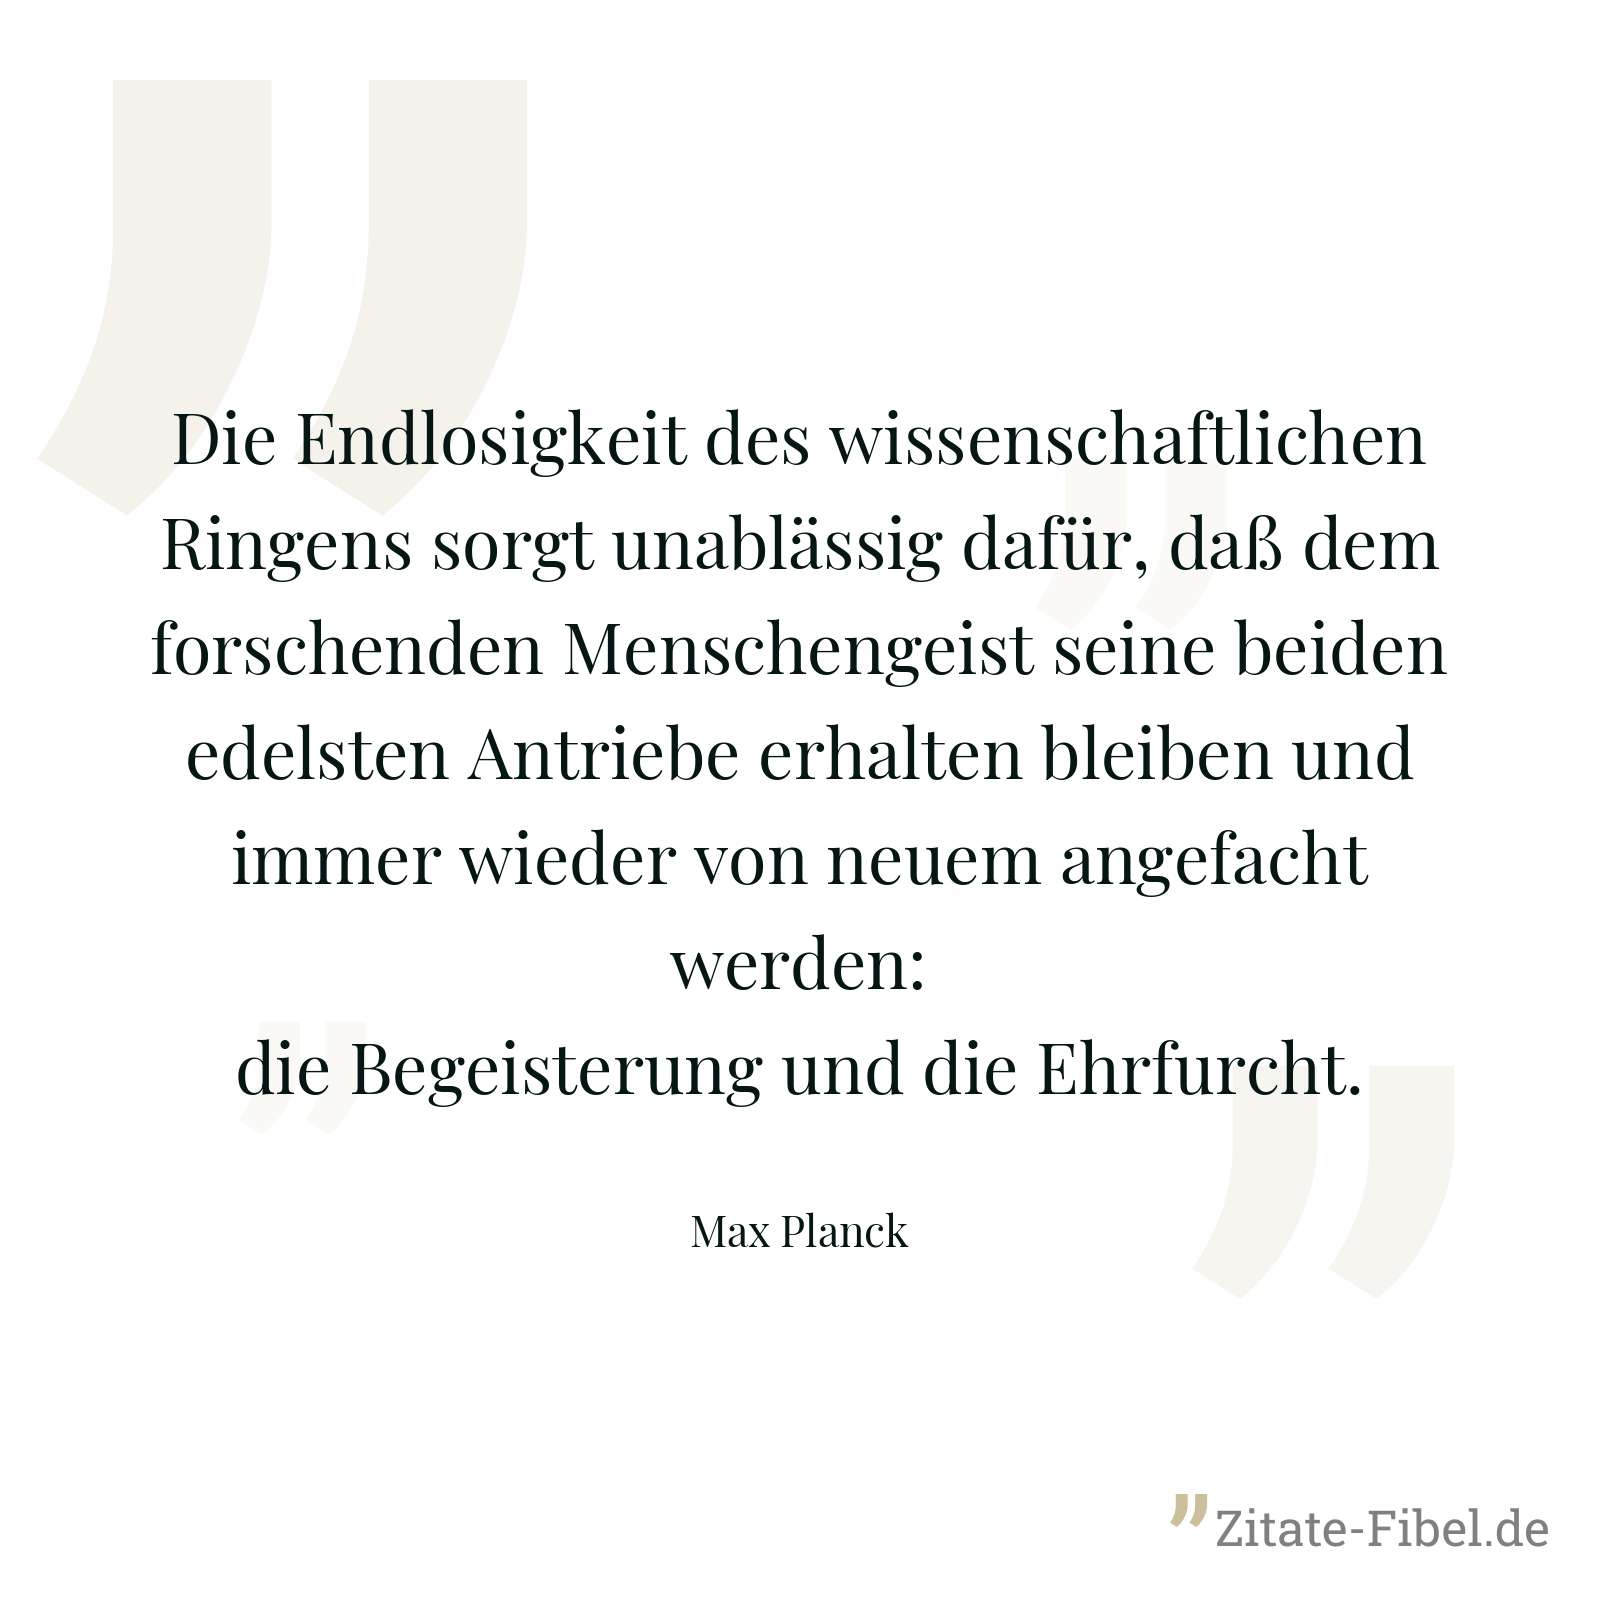 Die Endlosigkeit des wissenschaftlichen Ringens sorgt unablässig dafür, daß dem forschenden Menschengeist seine beiden edelsten Antriebe erhalten bleiben und immer wieder von neuem angefacht werden: die Begeisterung und die Ehrfurcht. - Max Planck